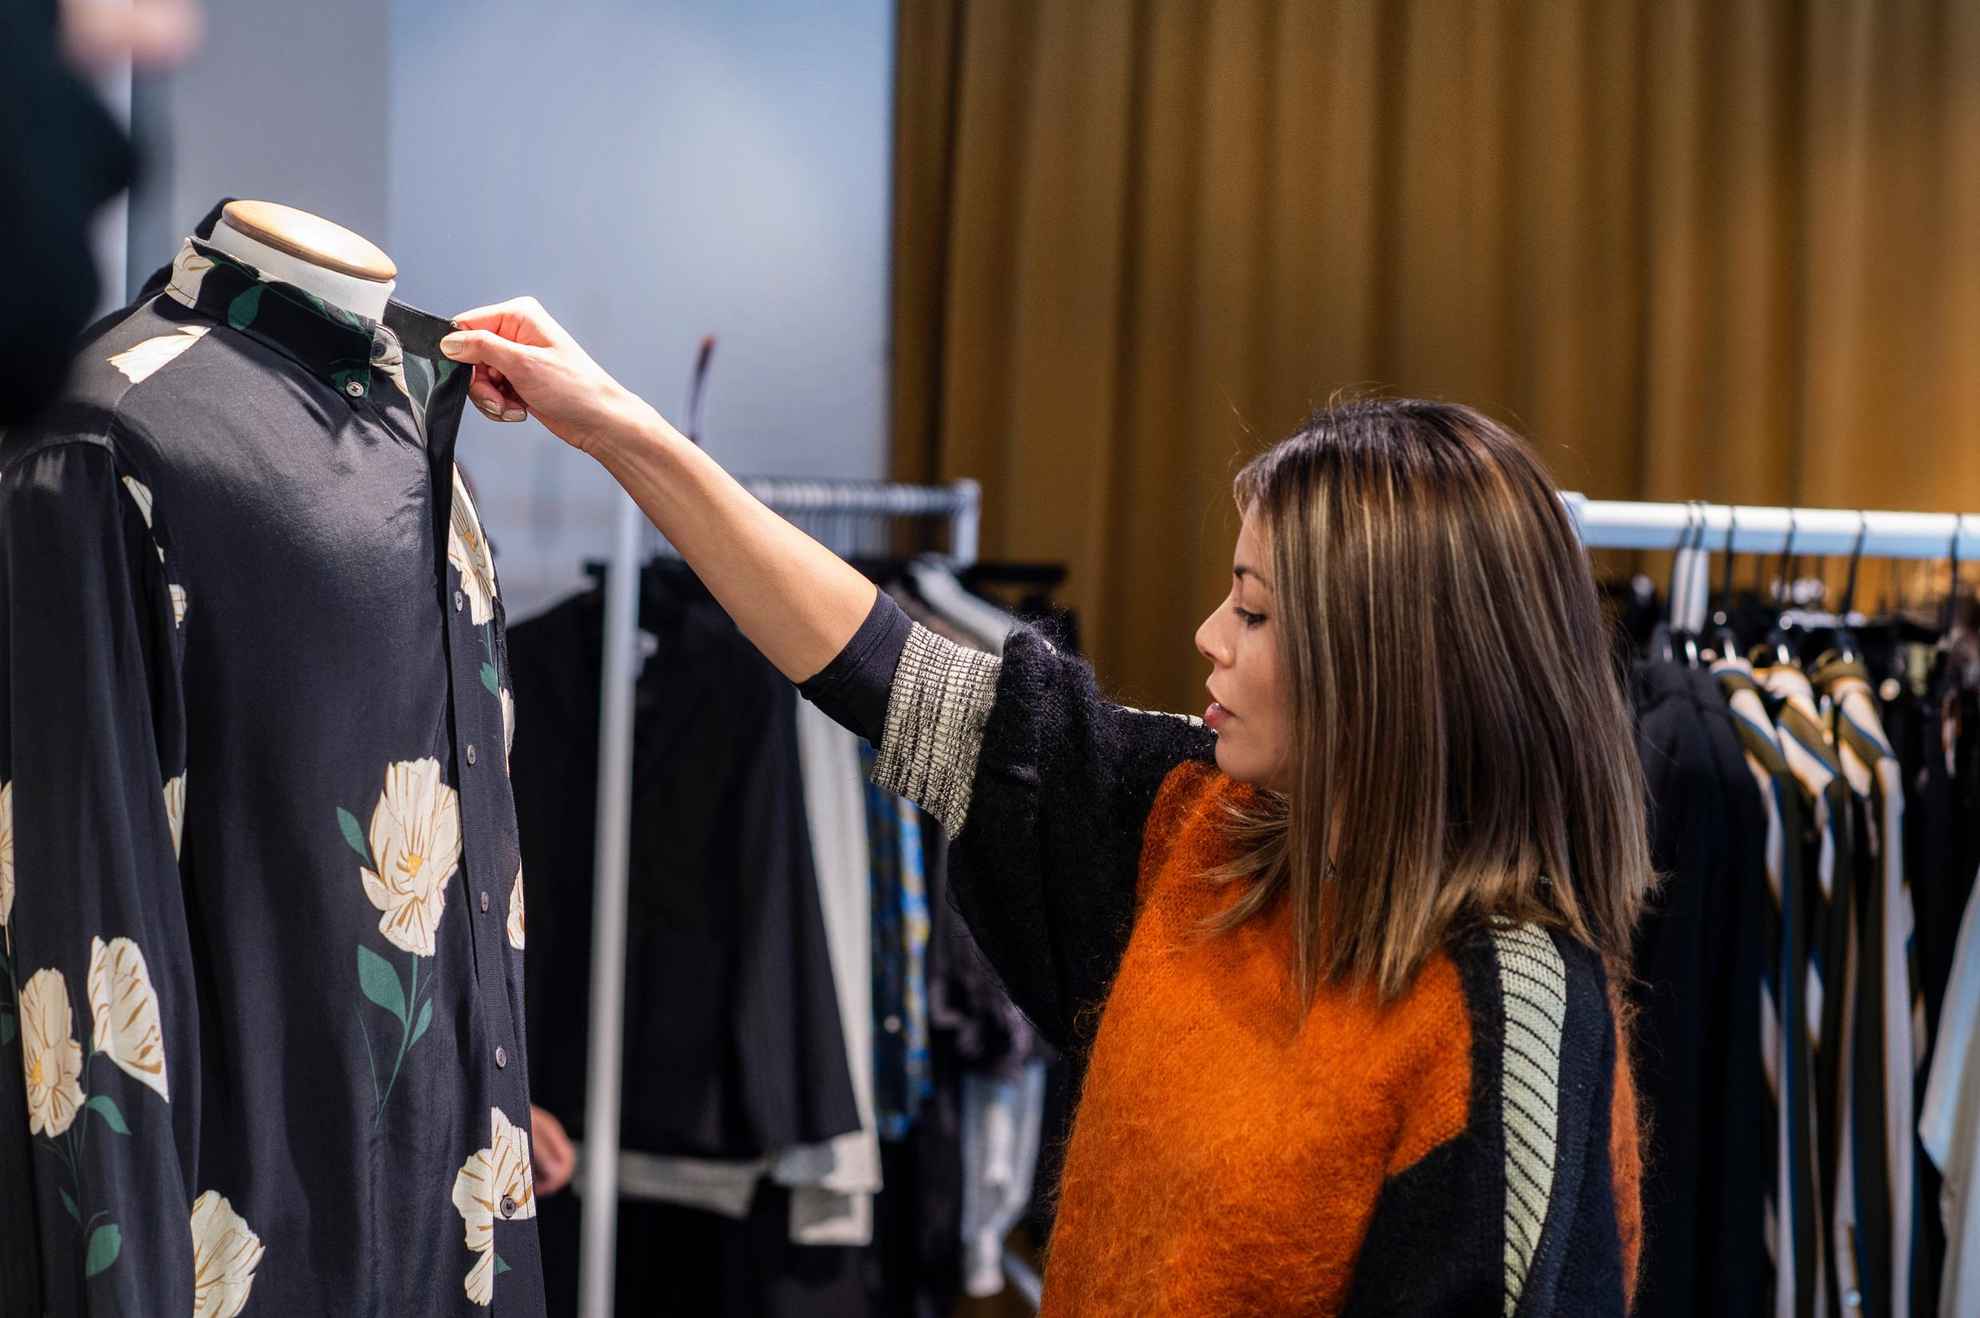 Une femme touche et regarde une chemise à motif floral sur un mannequin dans un magasin.